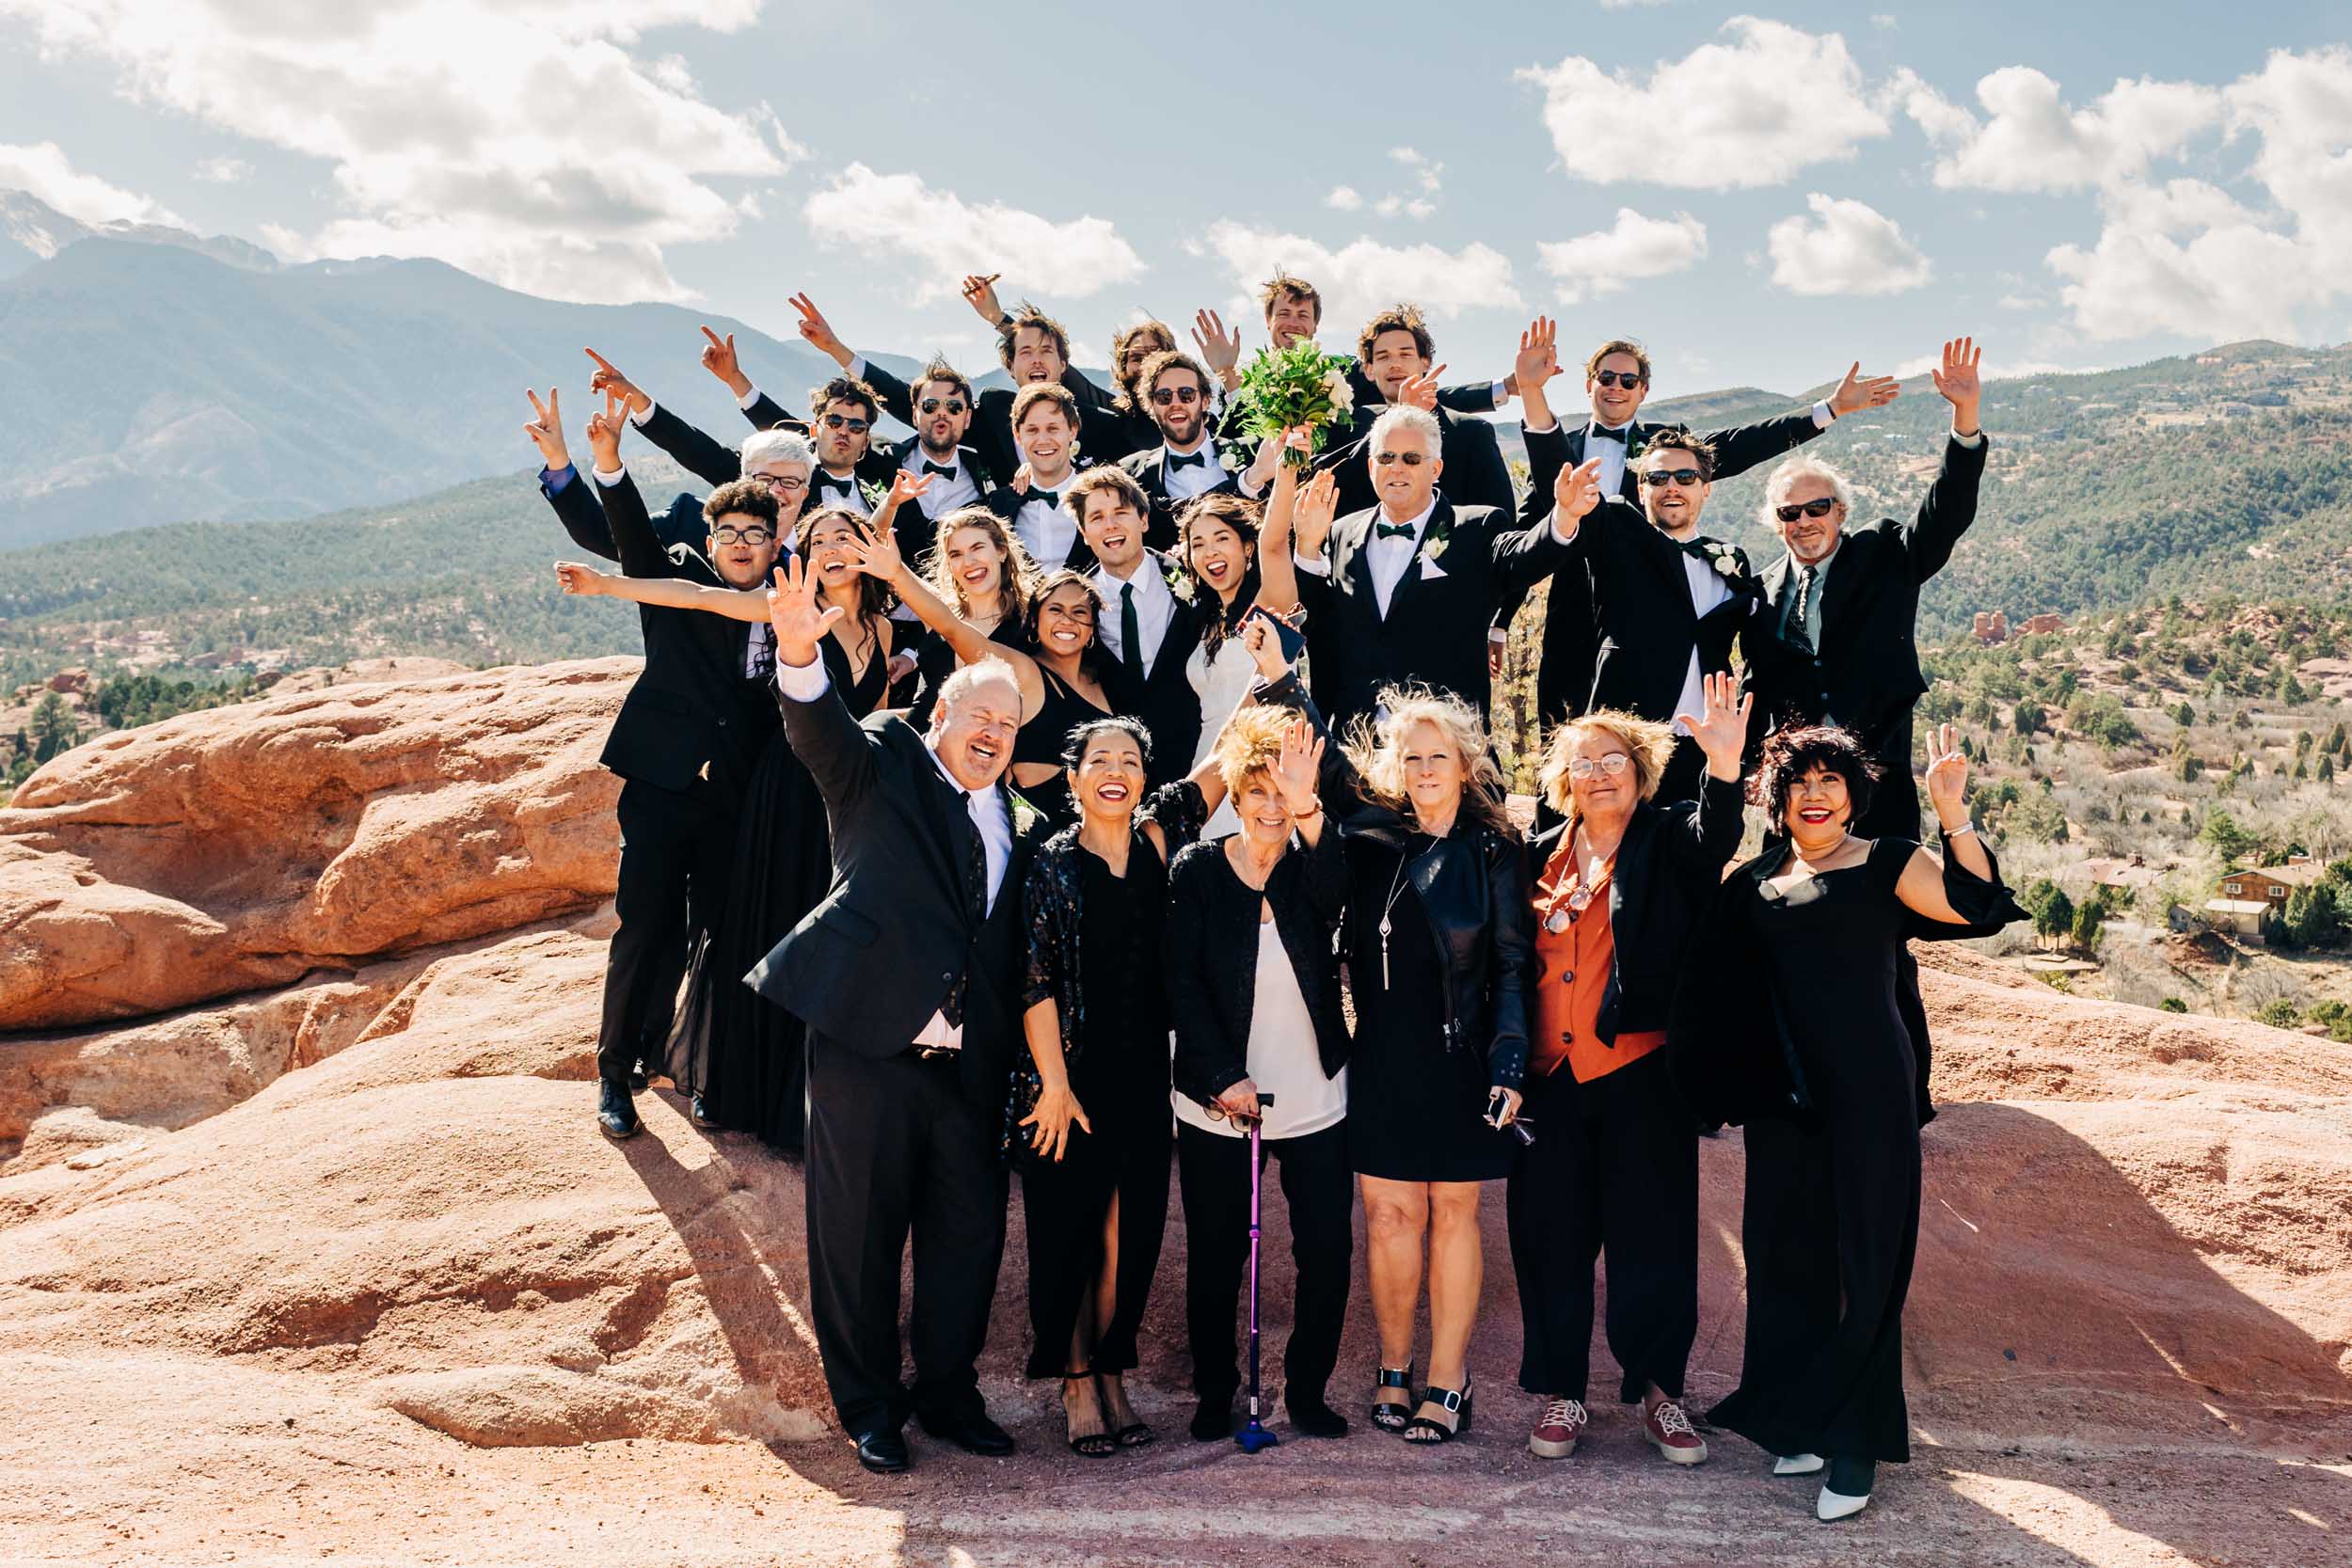 Fun family photo at Garden of the Gods in Colorado Springs